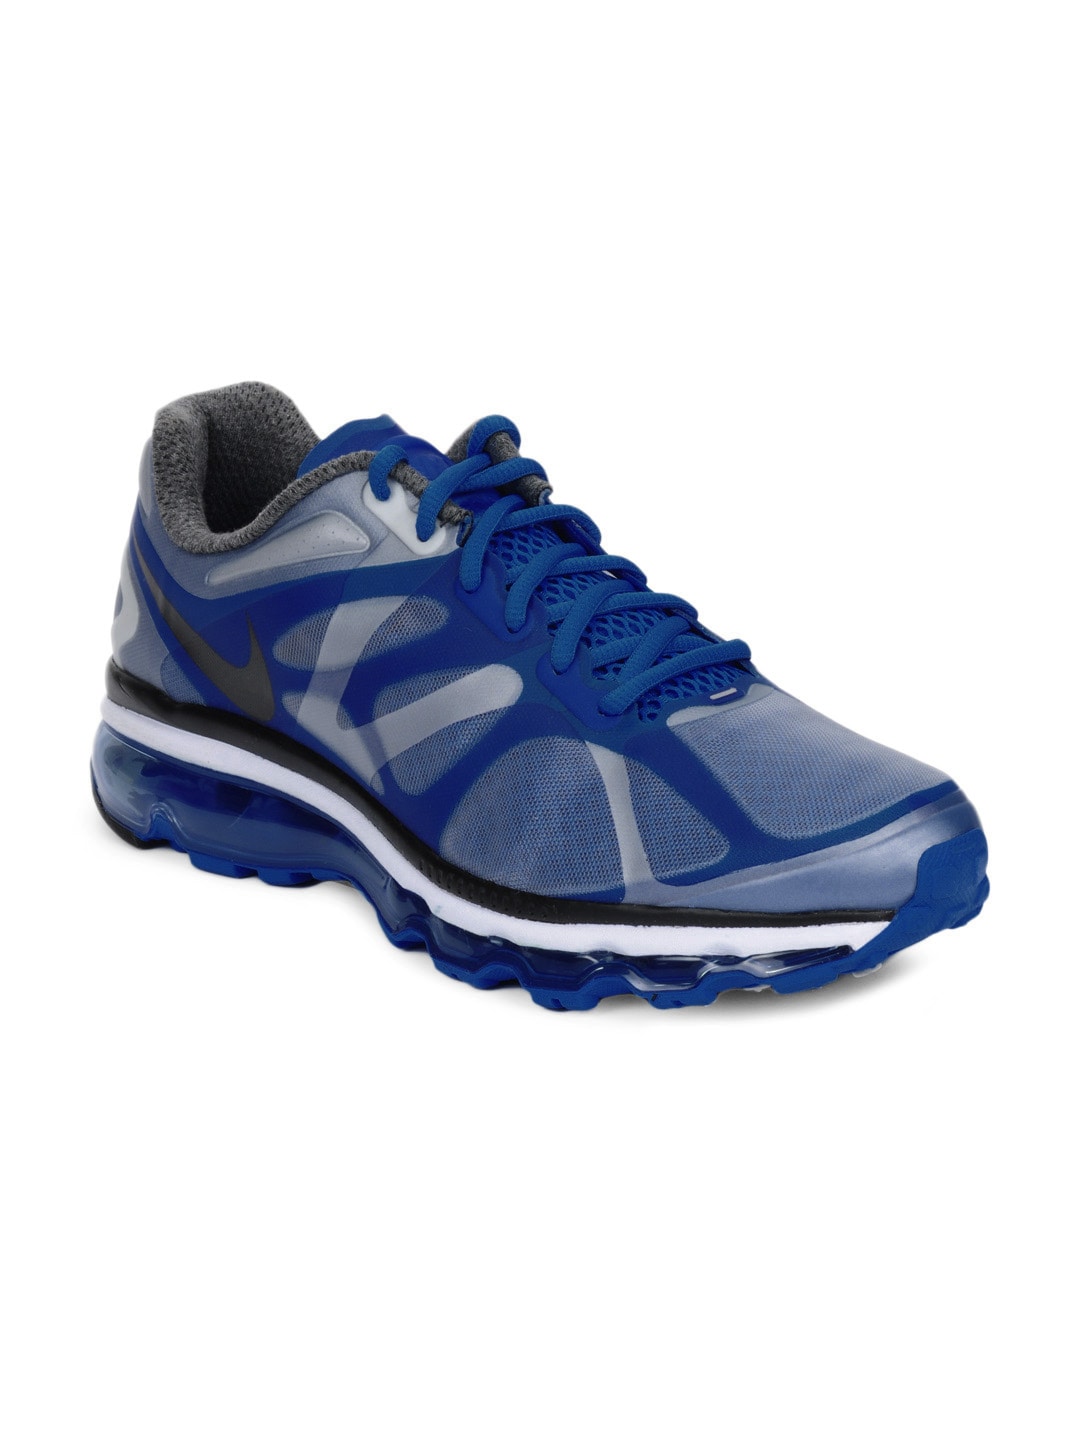 Nike Men Air Max+ 2012 Blue Sports Shoes